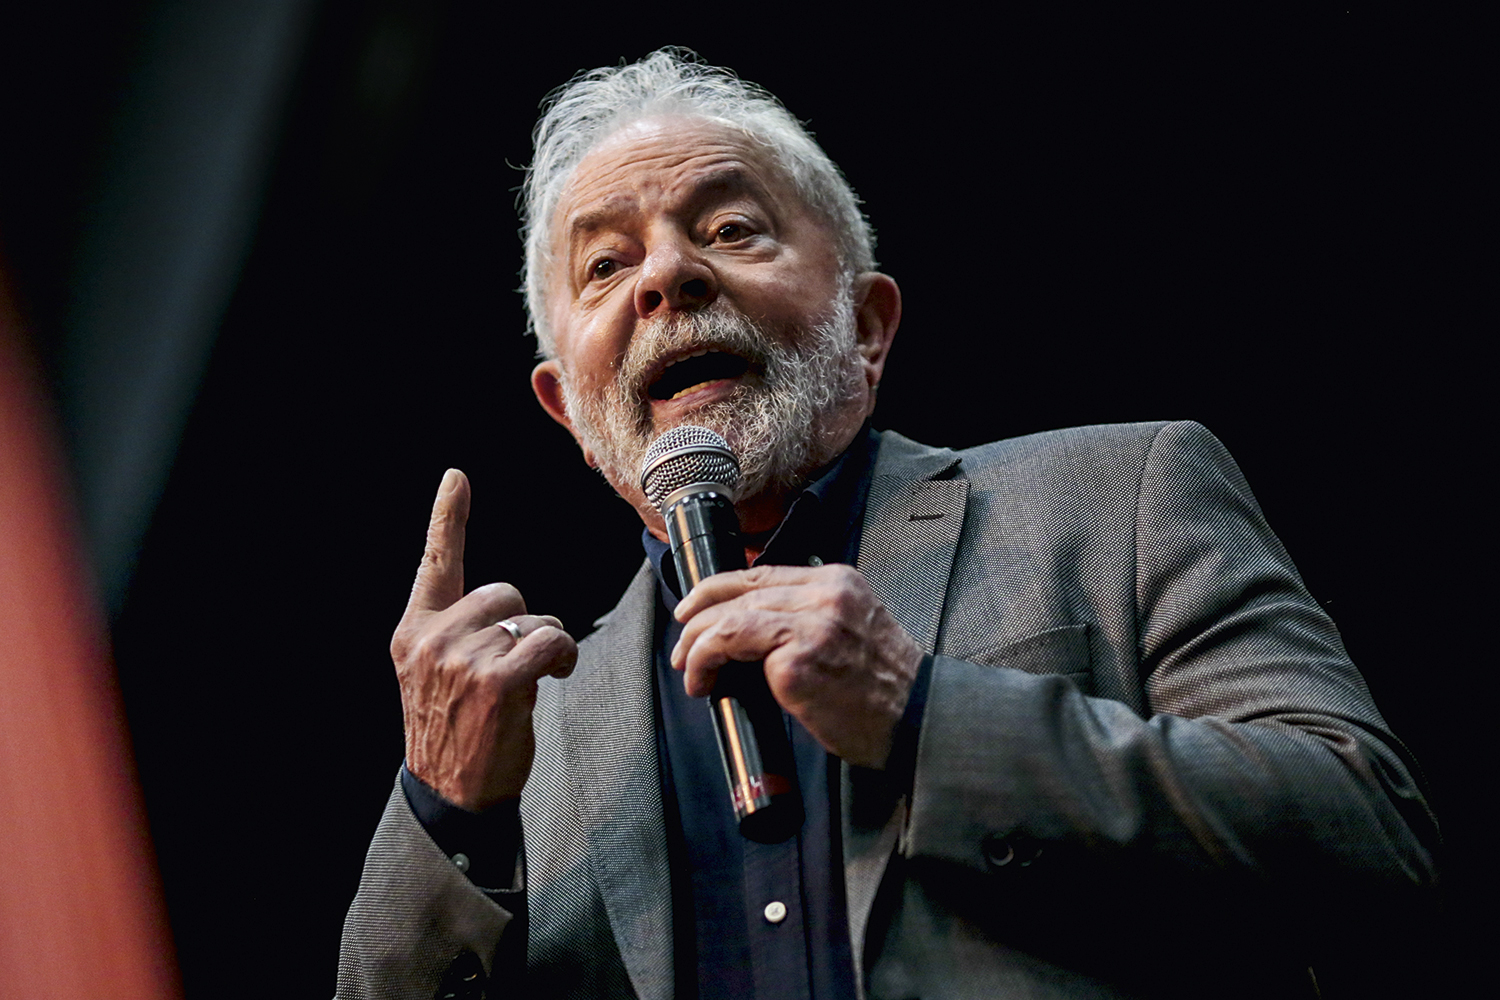 Um ex-prefeito, Lula e o lawfare | VEJA